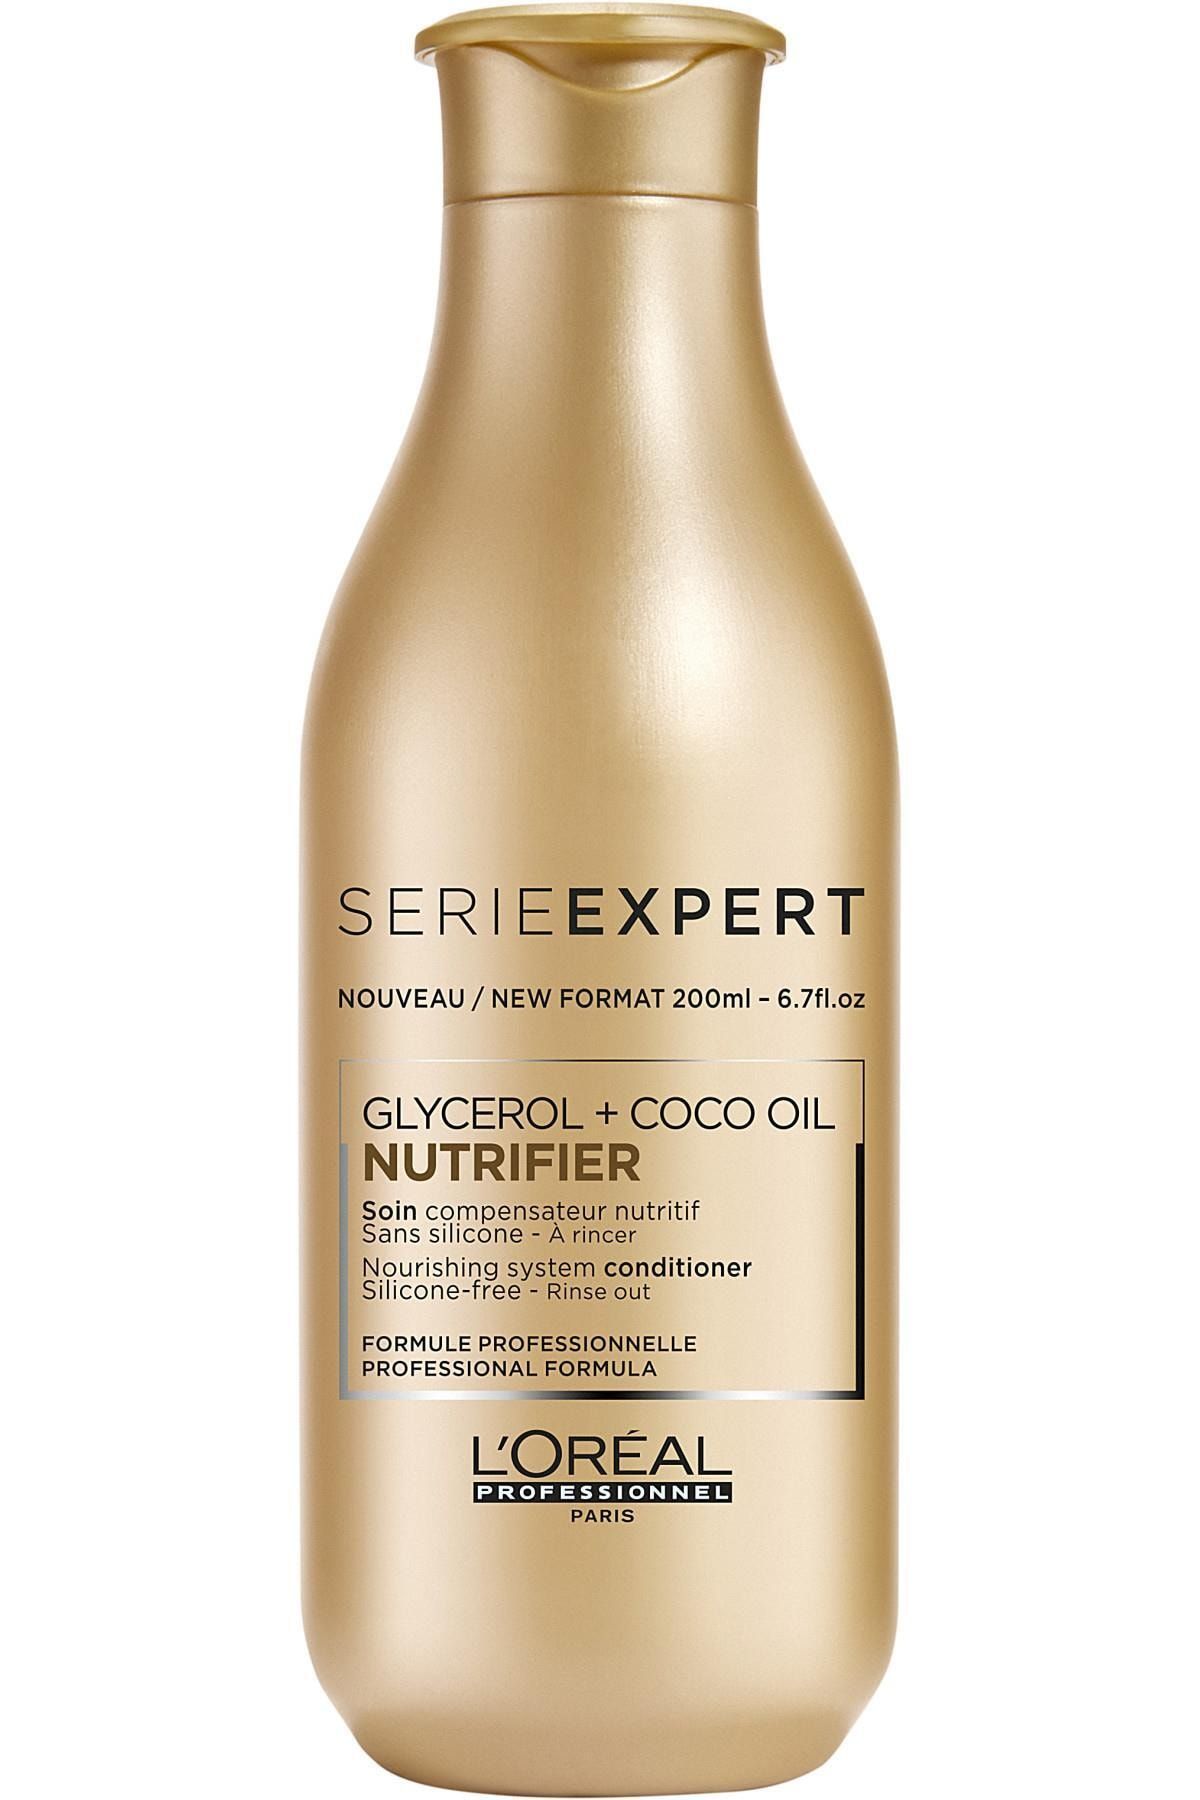 loreal szampon nutrifier expert kosmetyki